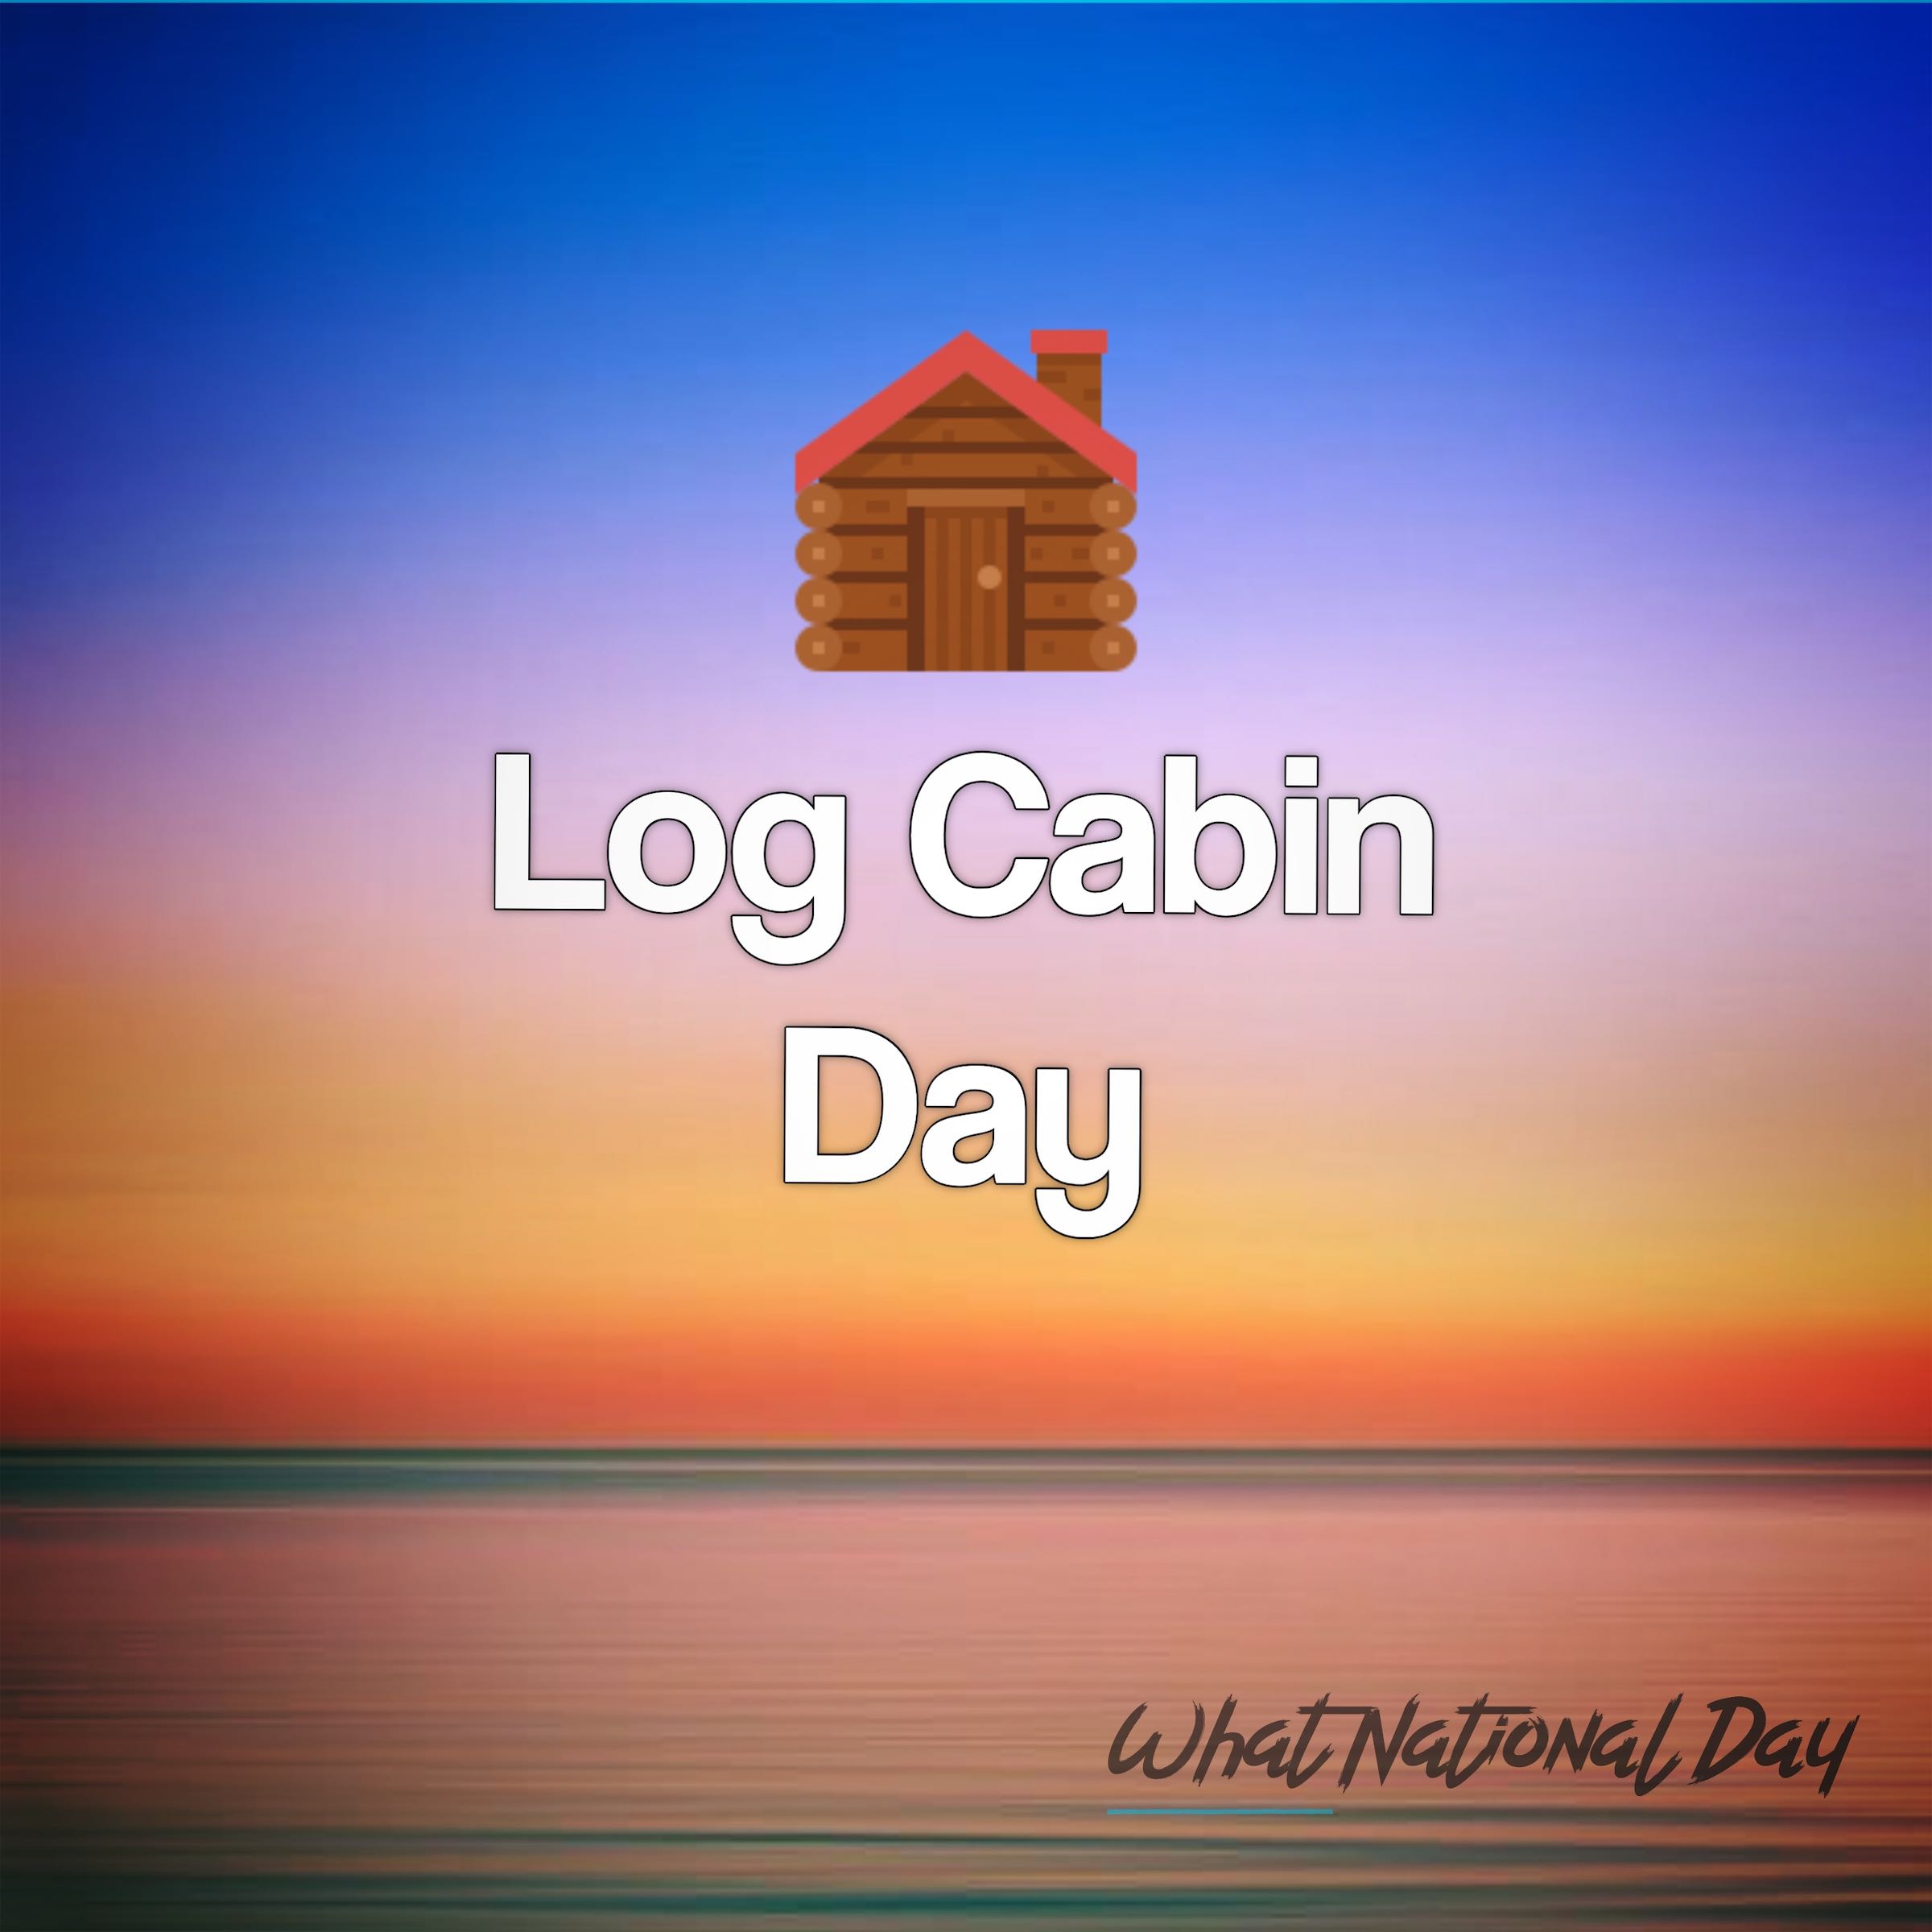 Log Cabin Day